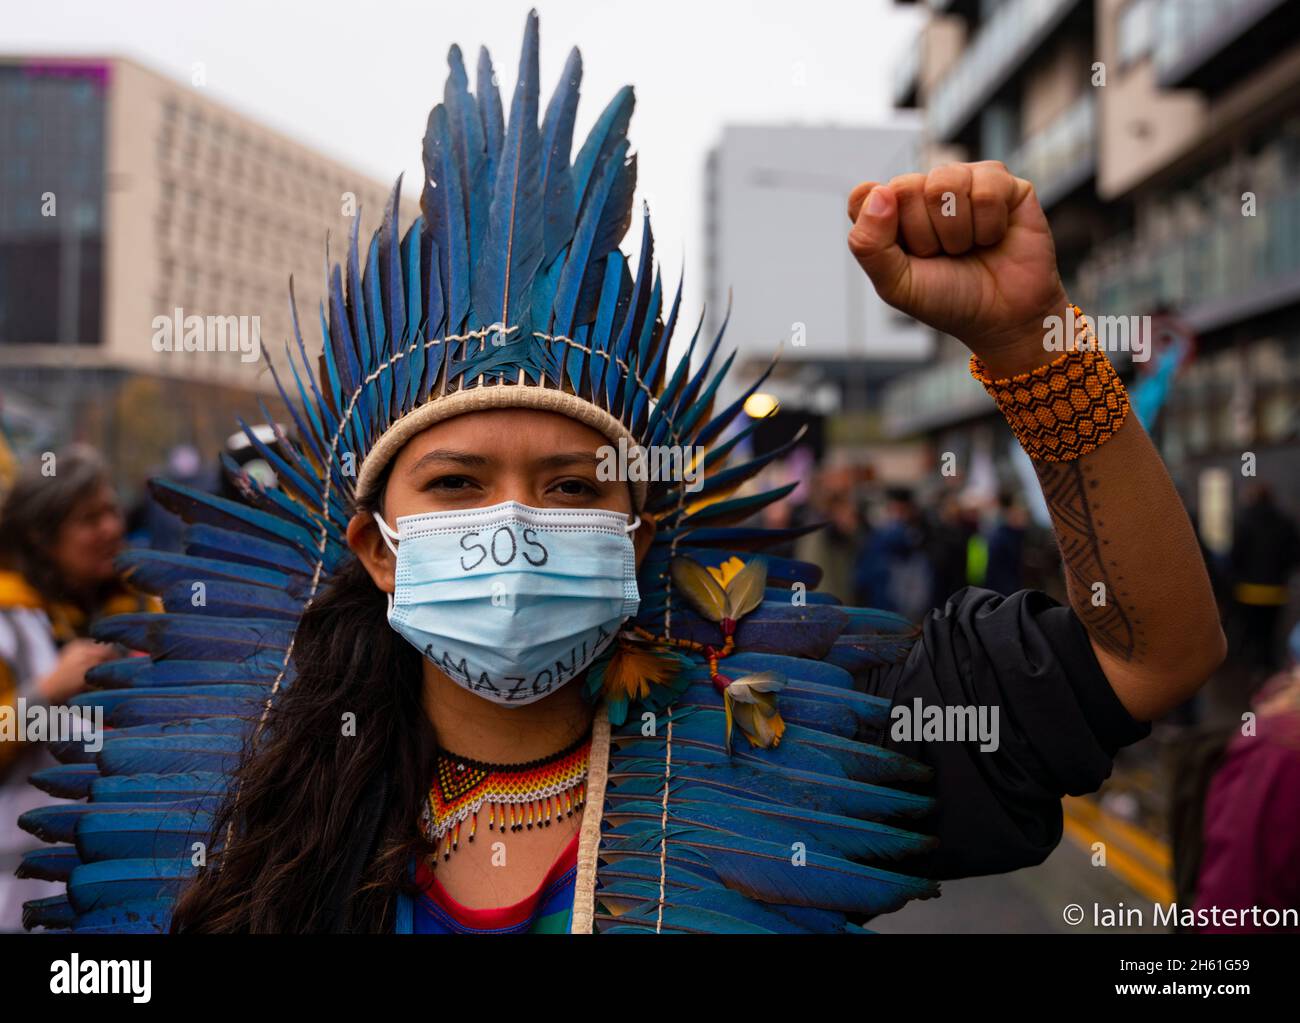 Glasgow, Schottland, Großbritannien. November 2021. Tag dreizehn und letzter Tag des UN-Klimagipfels COP26 in Glasgow. Eine indigene Frau steht vor dem Eingang zur COP26 mit einer SOS Amazonia-Botschaft auf der Gesichtsmaske. Iain Masterton/Alamy Live News. Stockfoto